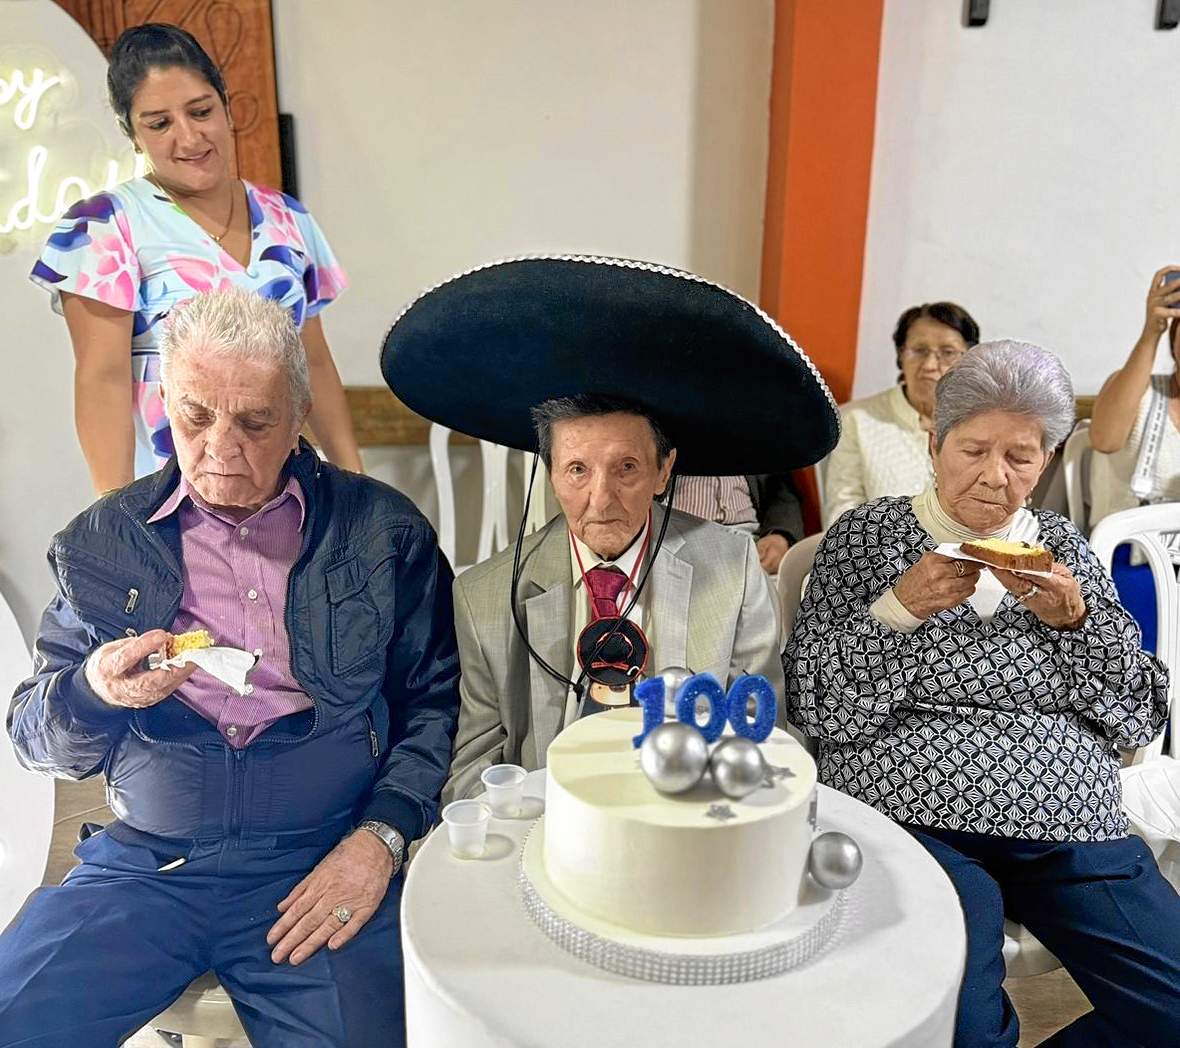 Foto | Jorge Iván Castaño | LA PATRIA Miguel Ángel acompañado de sus dos hermanos Lucila, de 96 años, y Merardo, de 86 años.